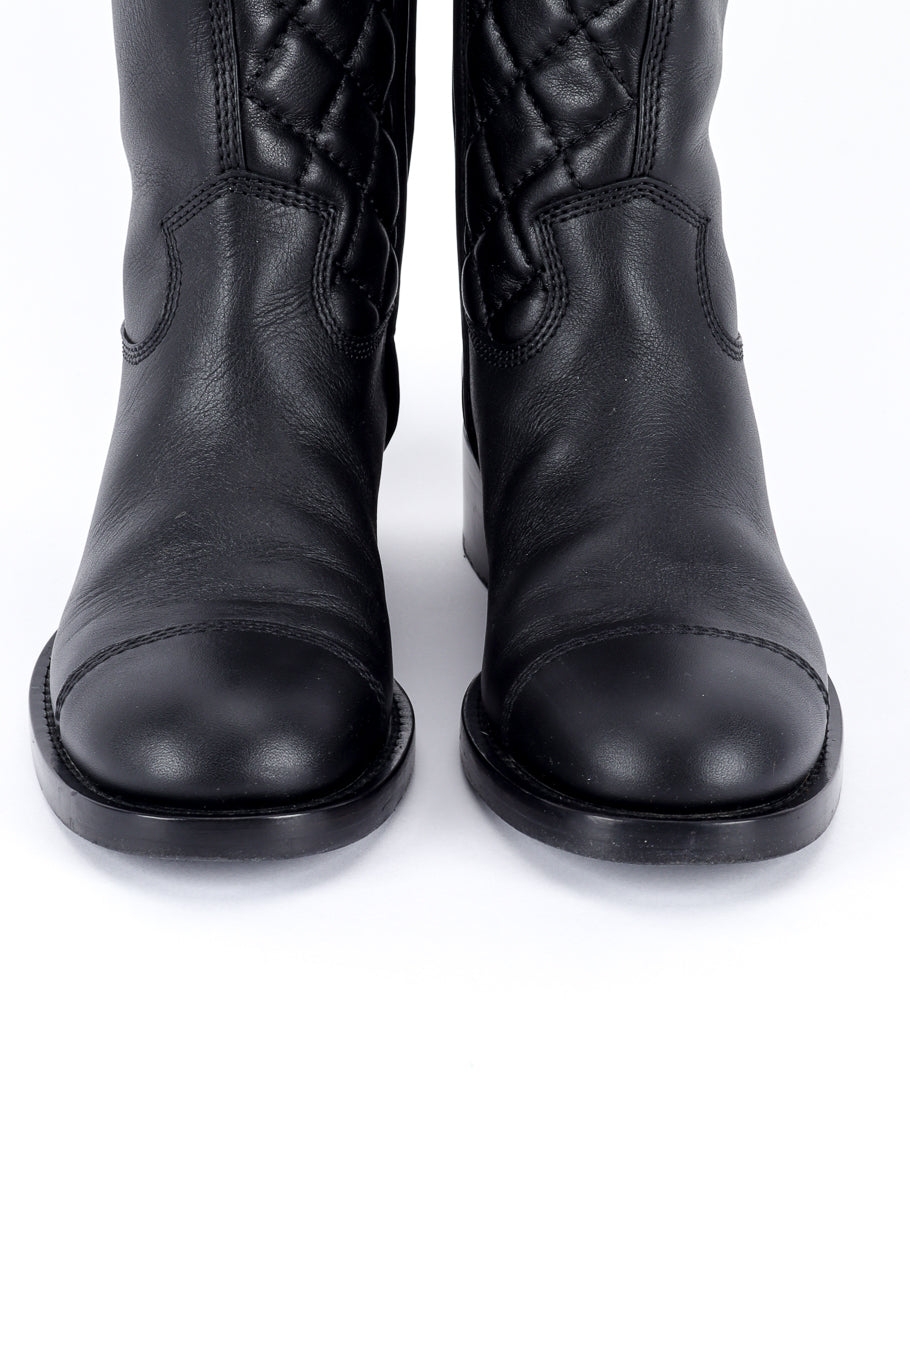 Chanel CC Quilted Mid-Calf Boots front closeup @recess la